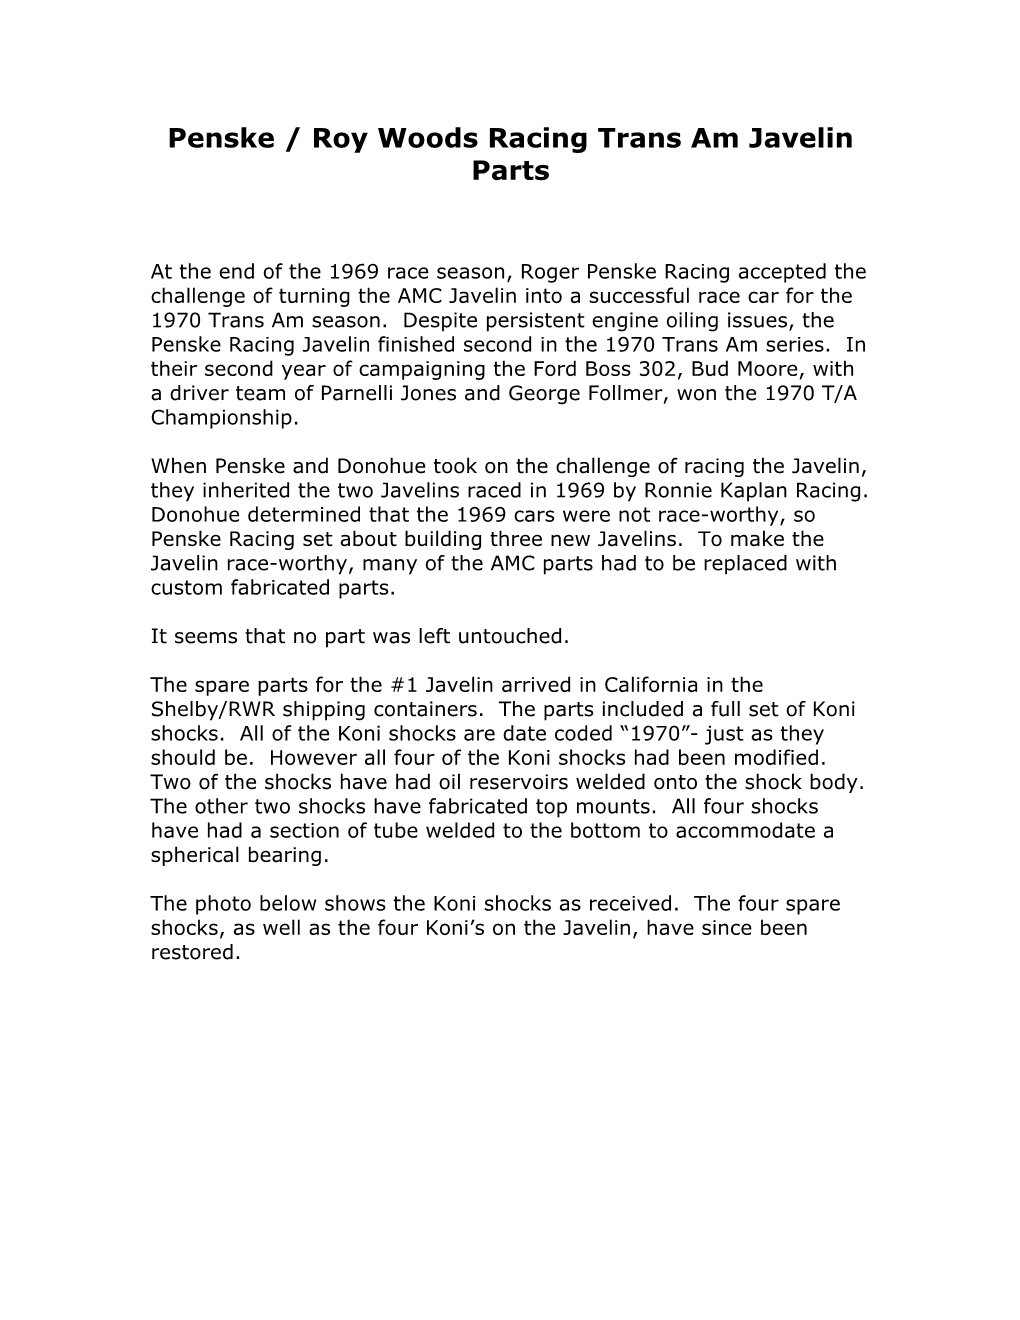 Penske / Roy Woods Racing Trans Am Javelin Parts